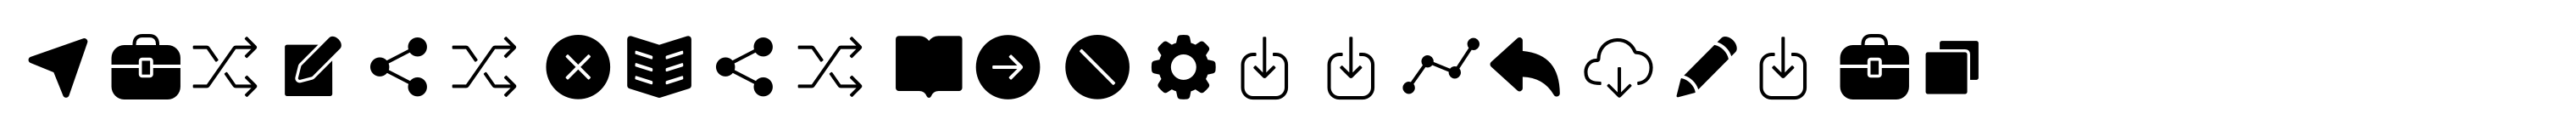 Panton Icons C Fill Regular